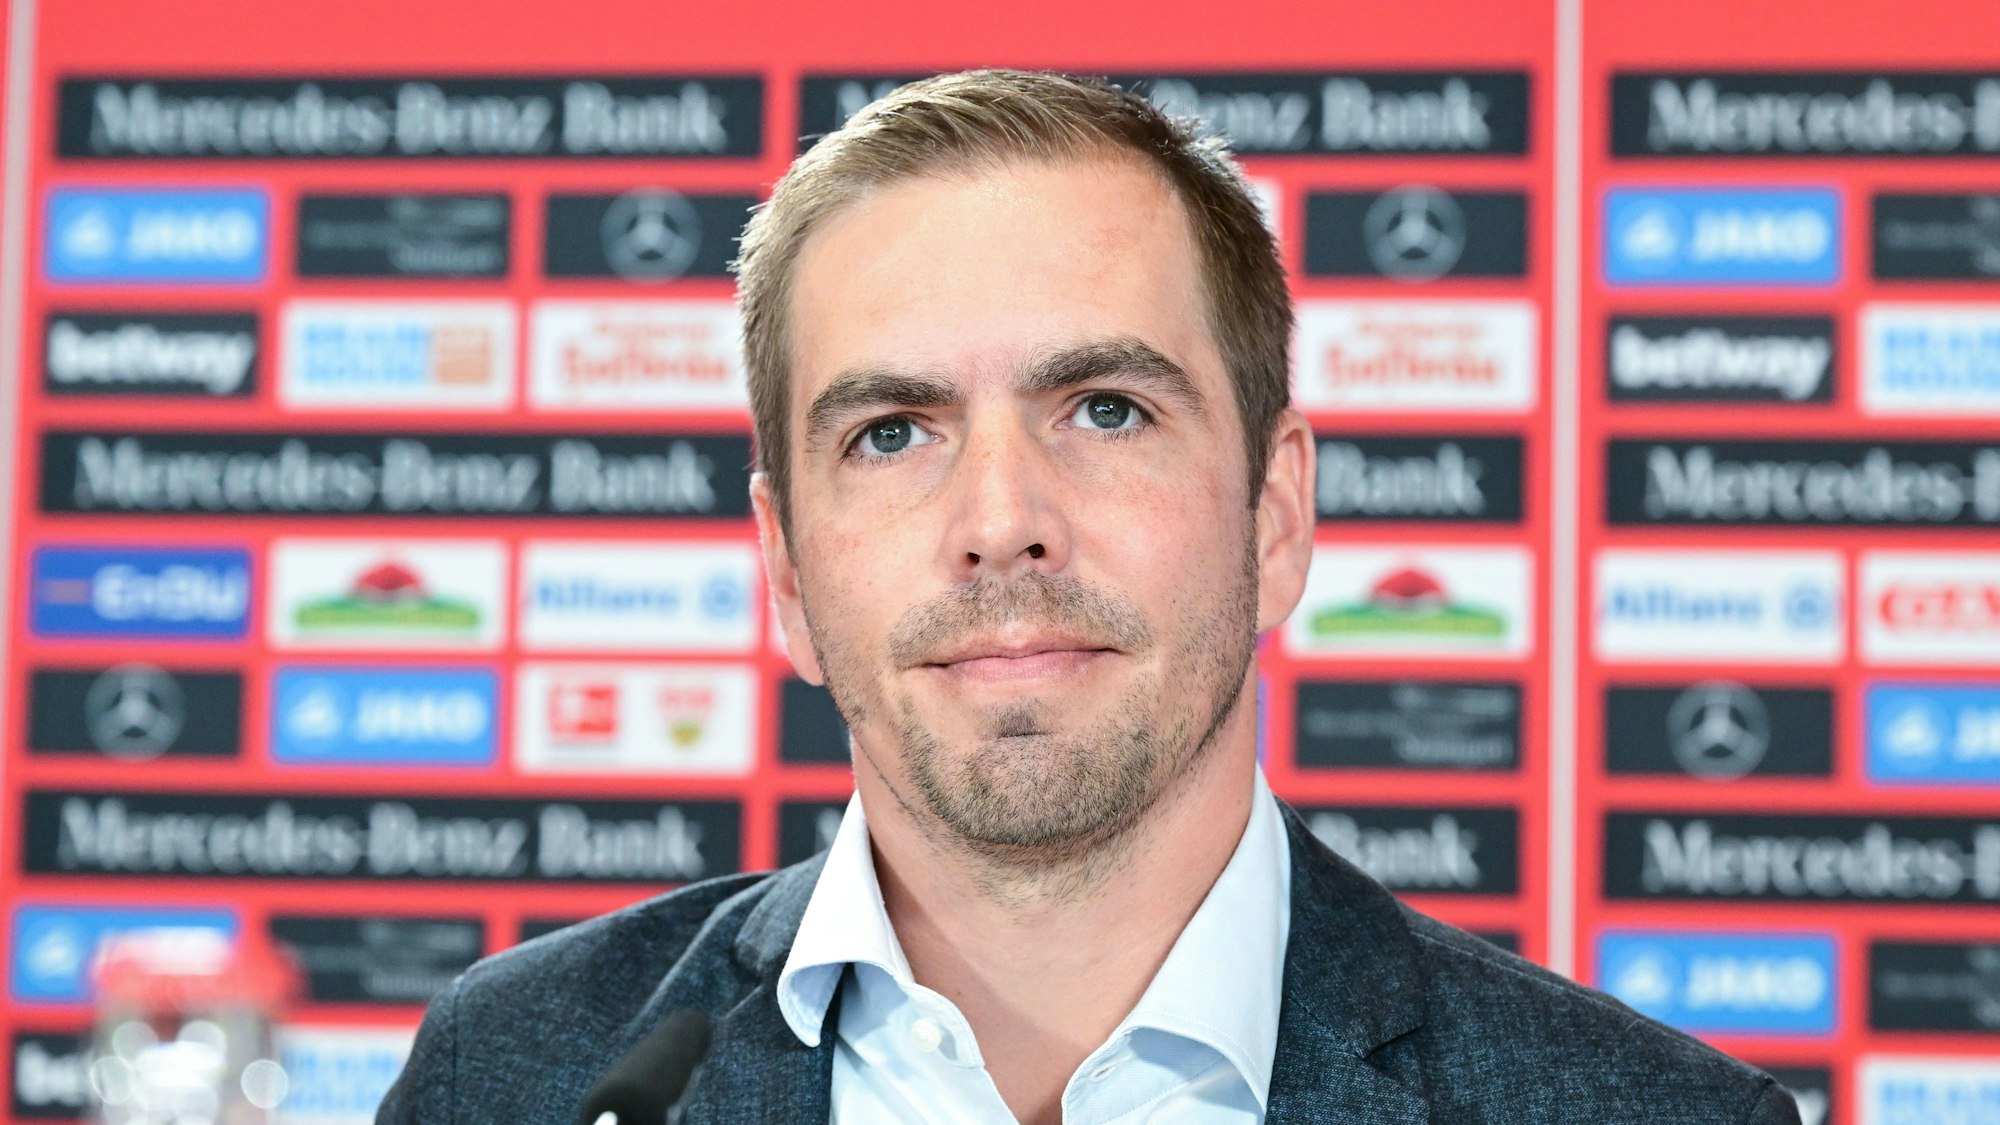 Der frühere Fußball Bundesligaspieler Philipp Lahm, aufgenommen bei einer Pressekonferenz des Bundesligavereins VfB Stuttgart.